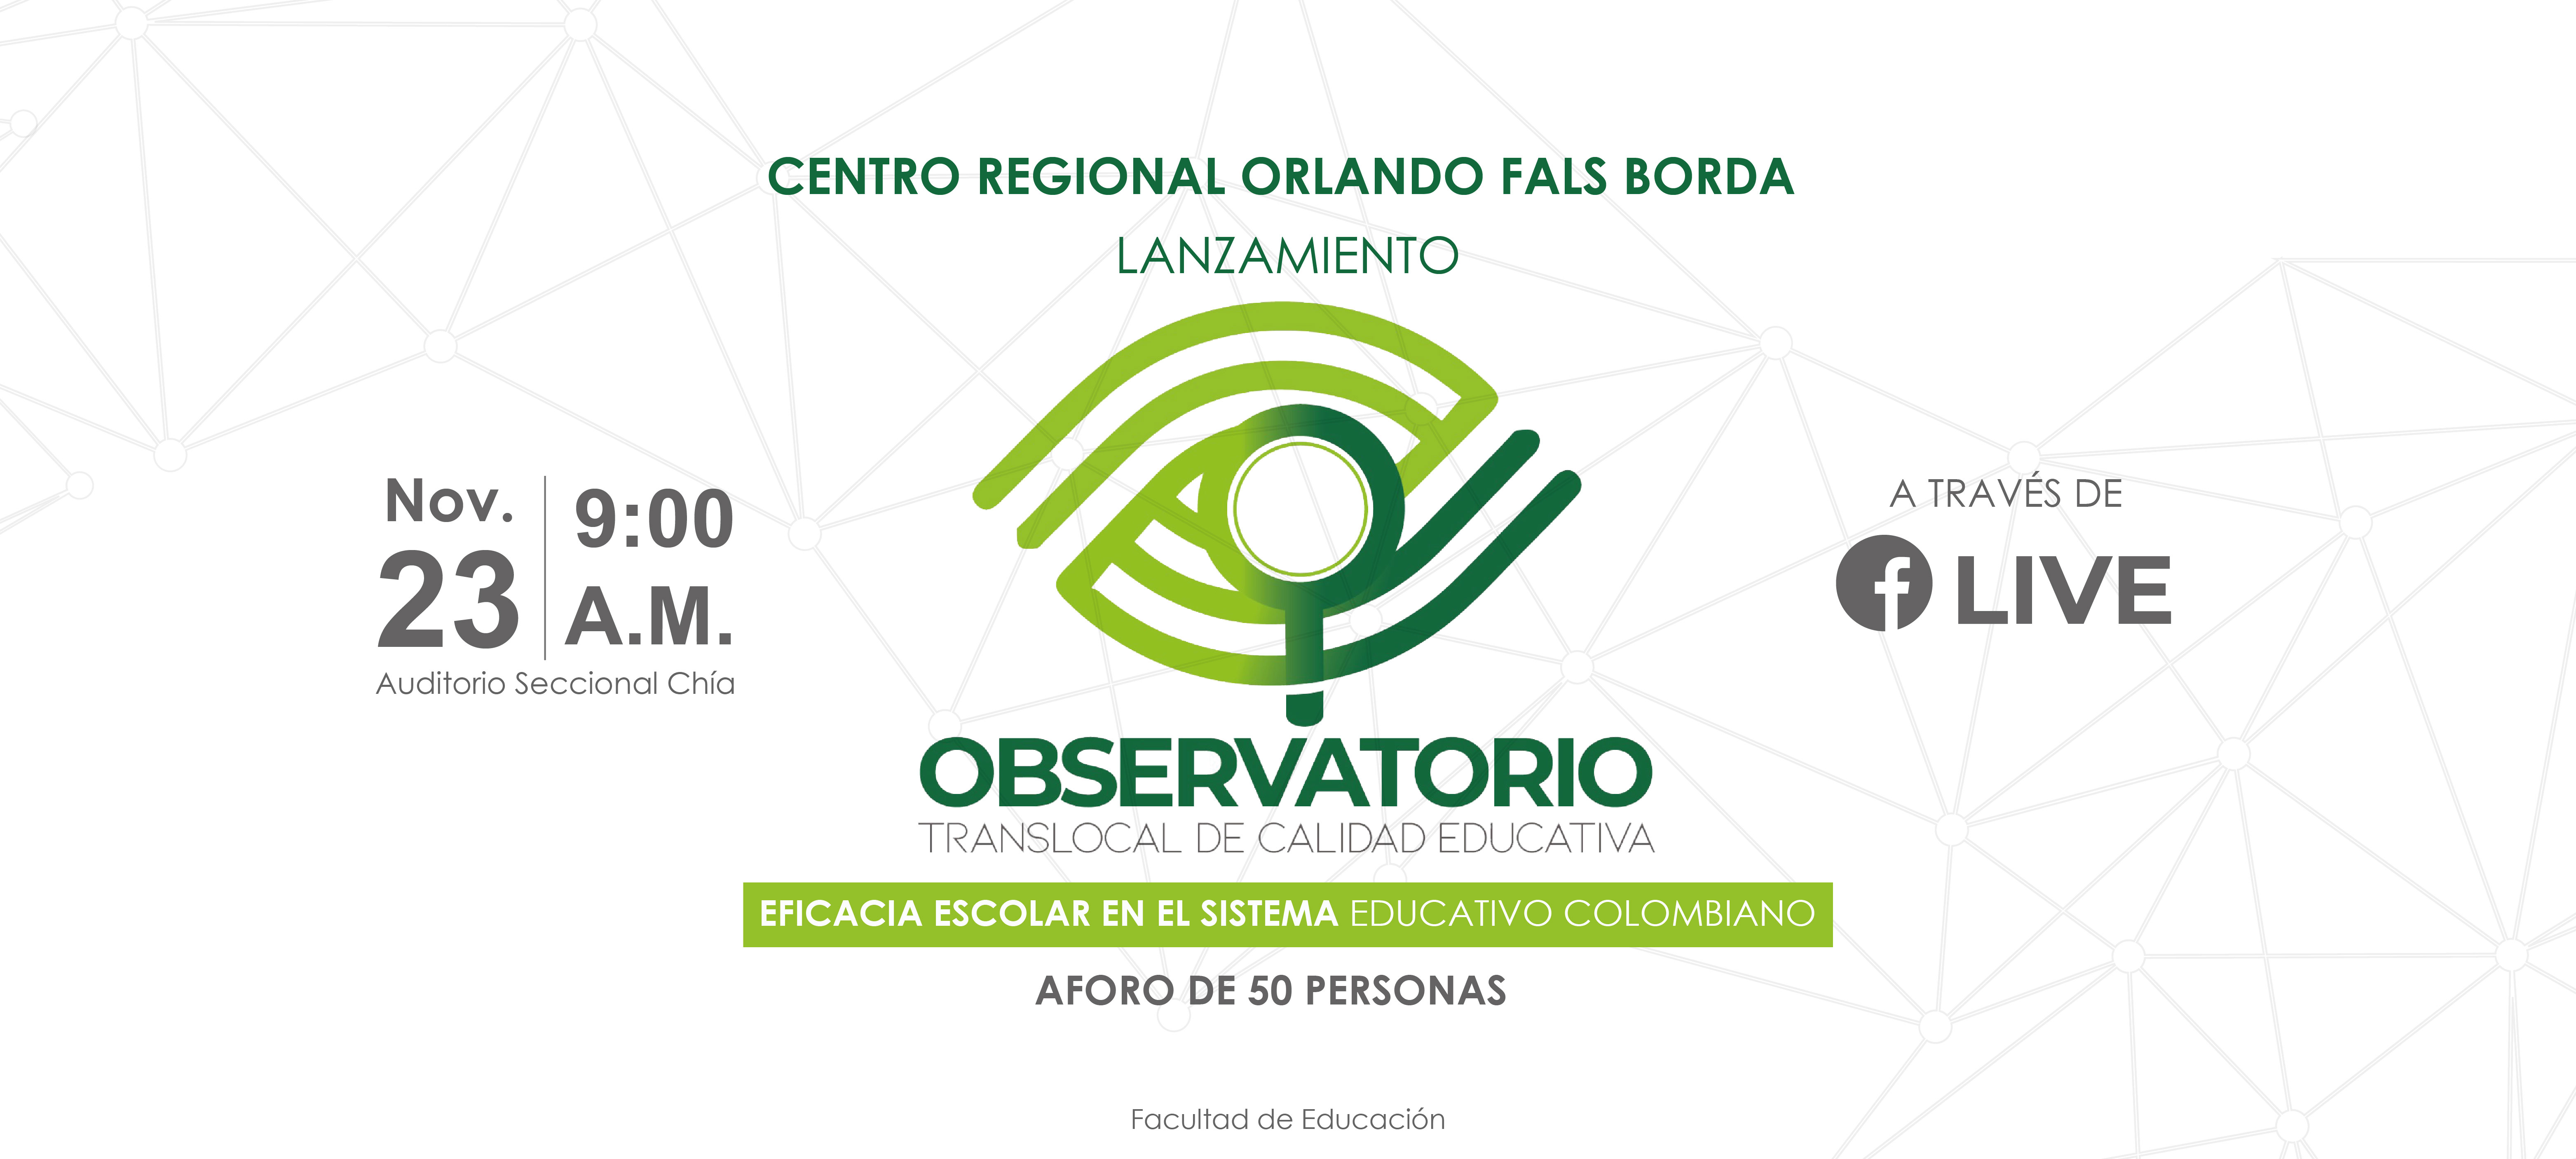 Lanzamiento de observatorio de calidad educativa